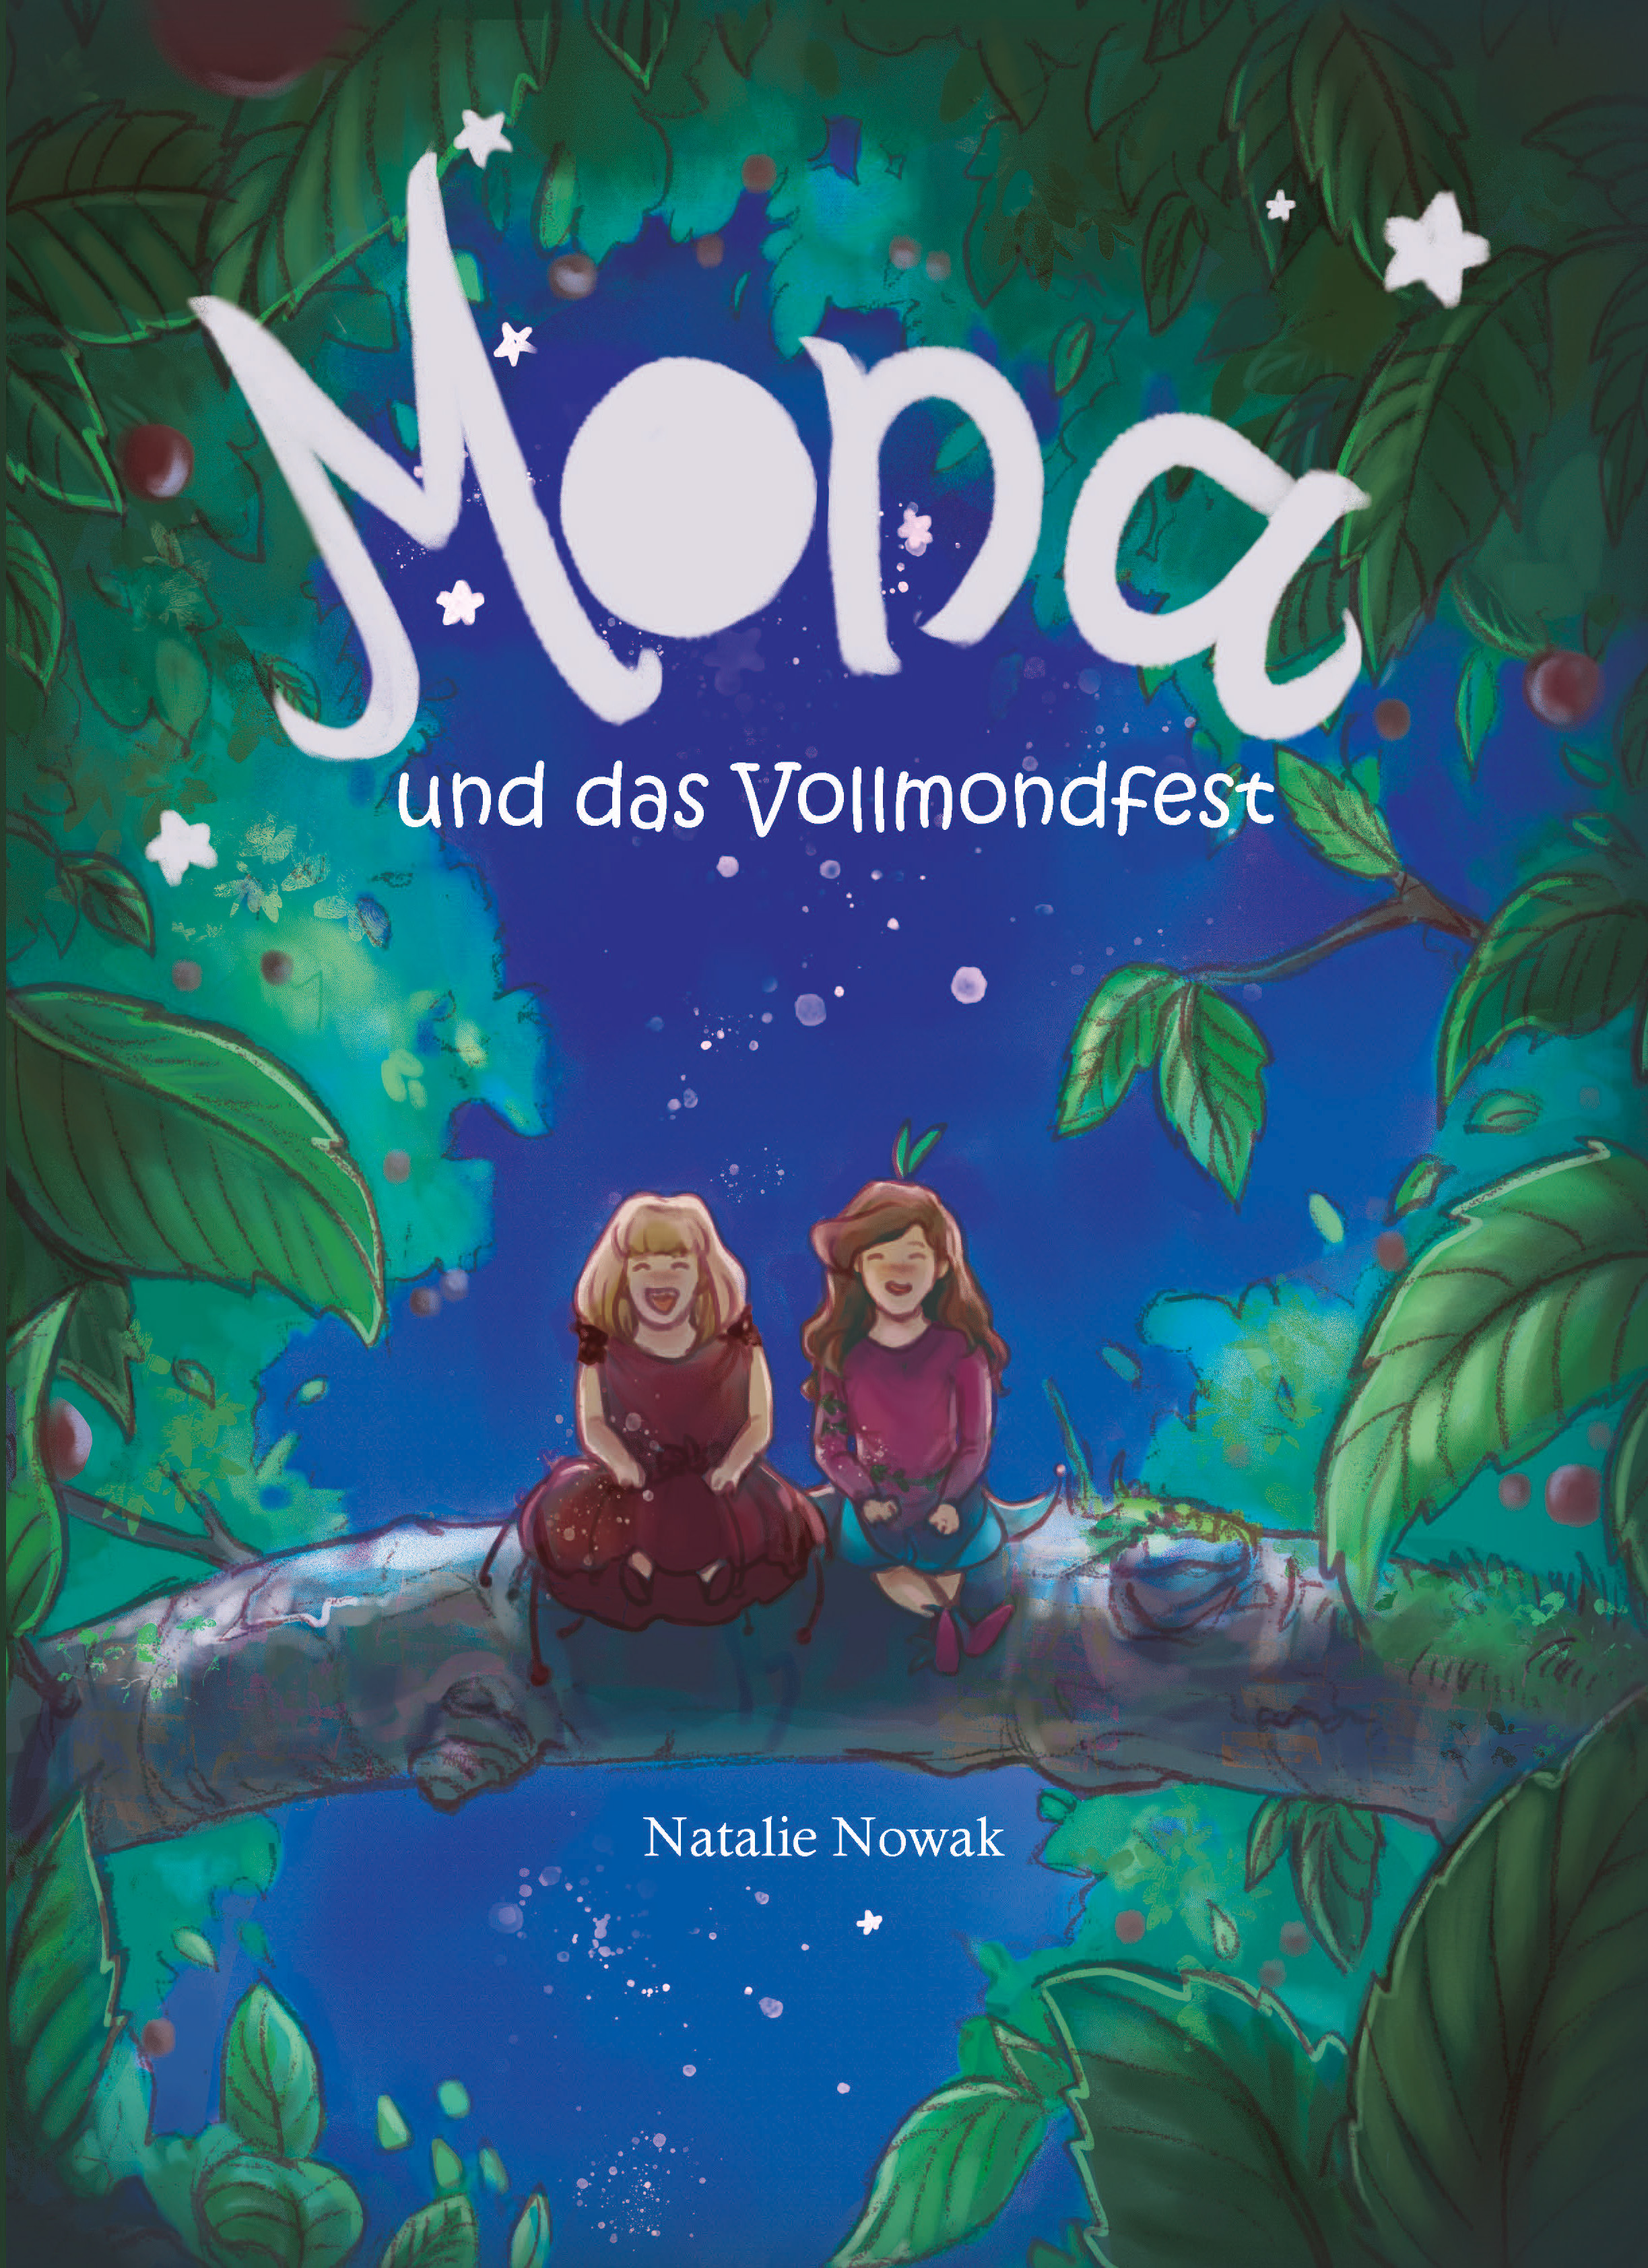 Mona. Buch zur Zwischenprüfung Illustration von Natalie Nowak